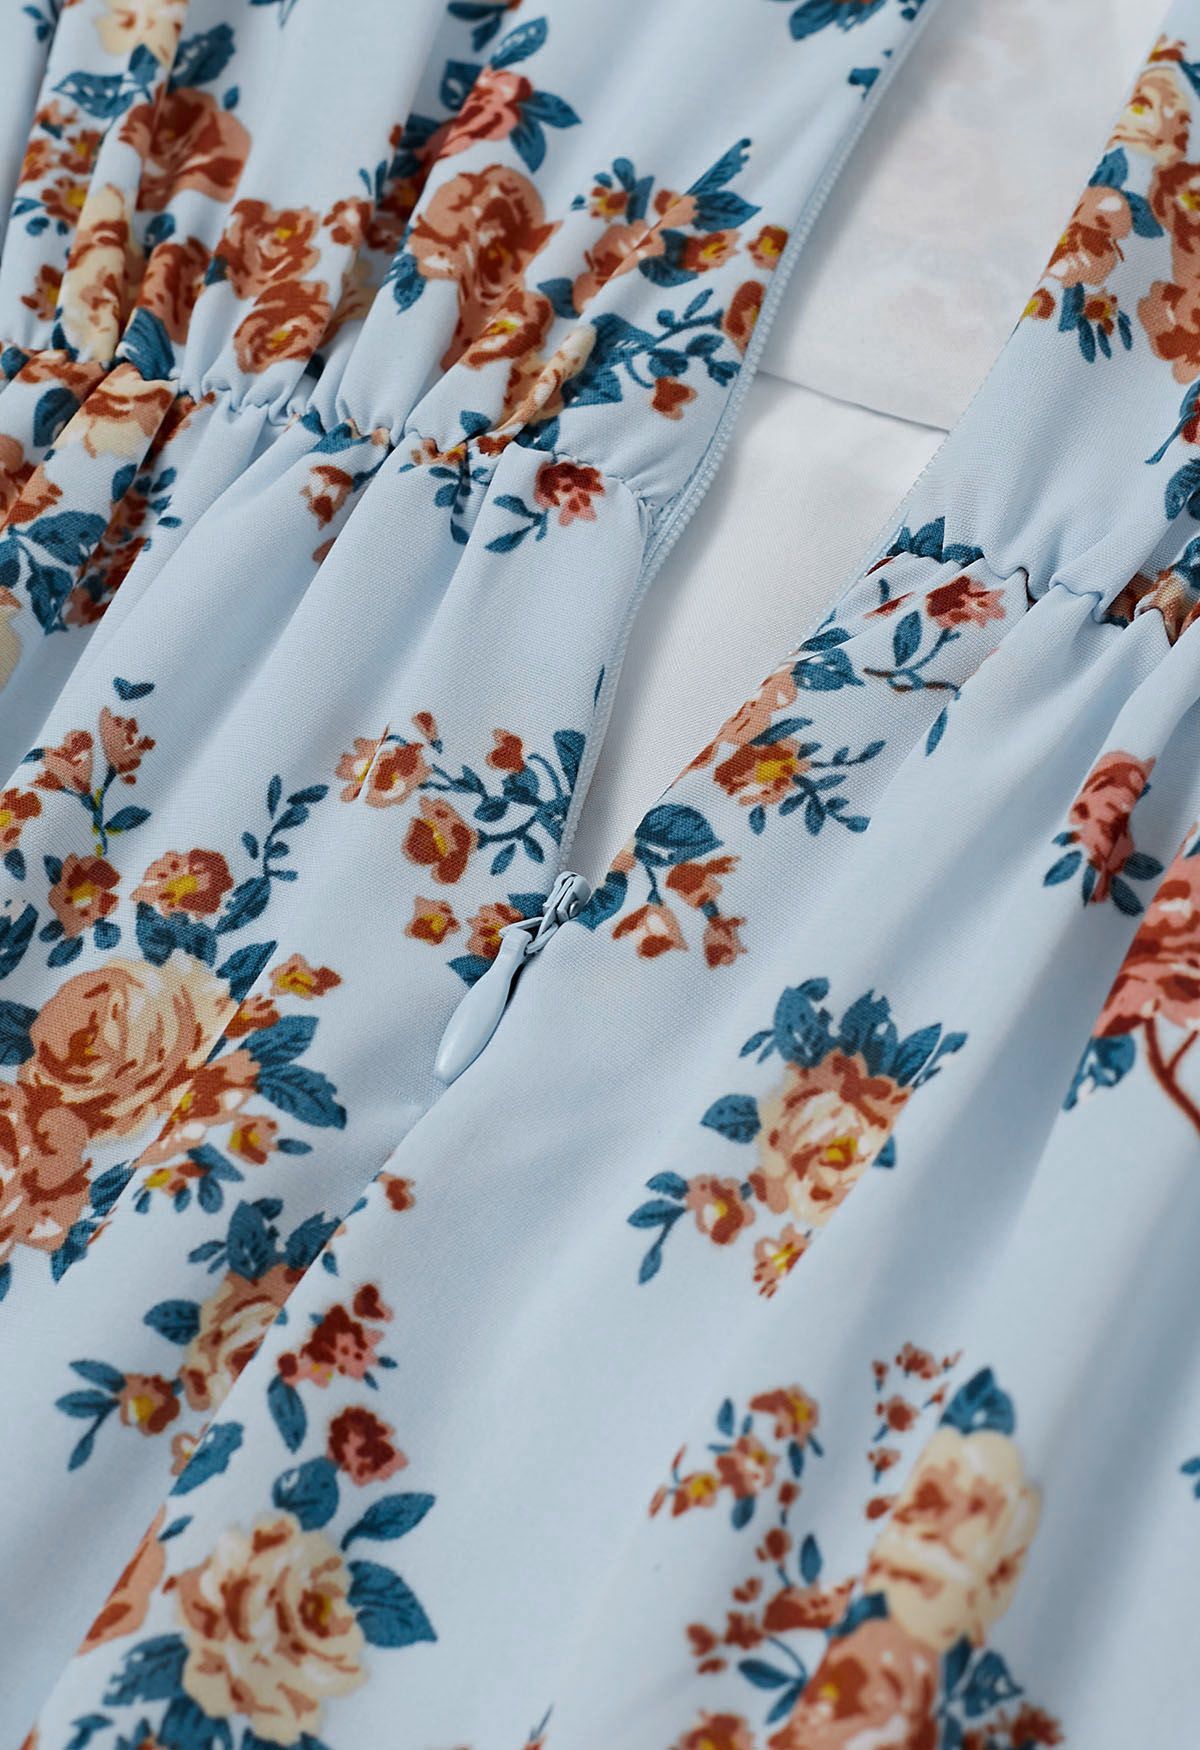 Robe mi-longue à volants effet portefeuille Floral Romance en bleu